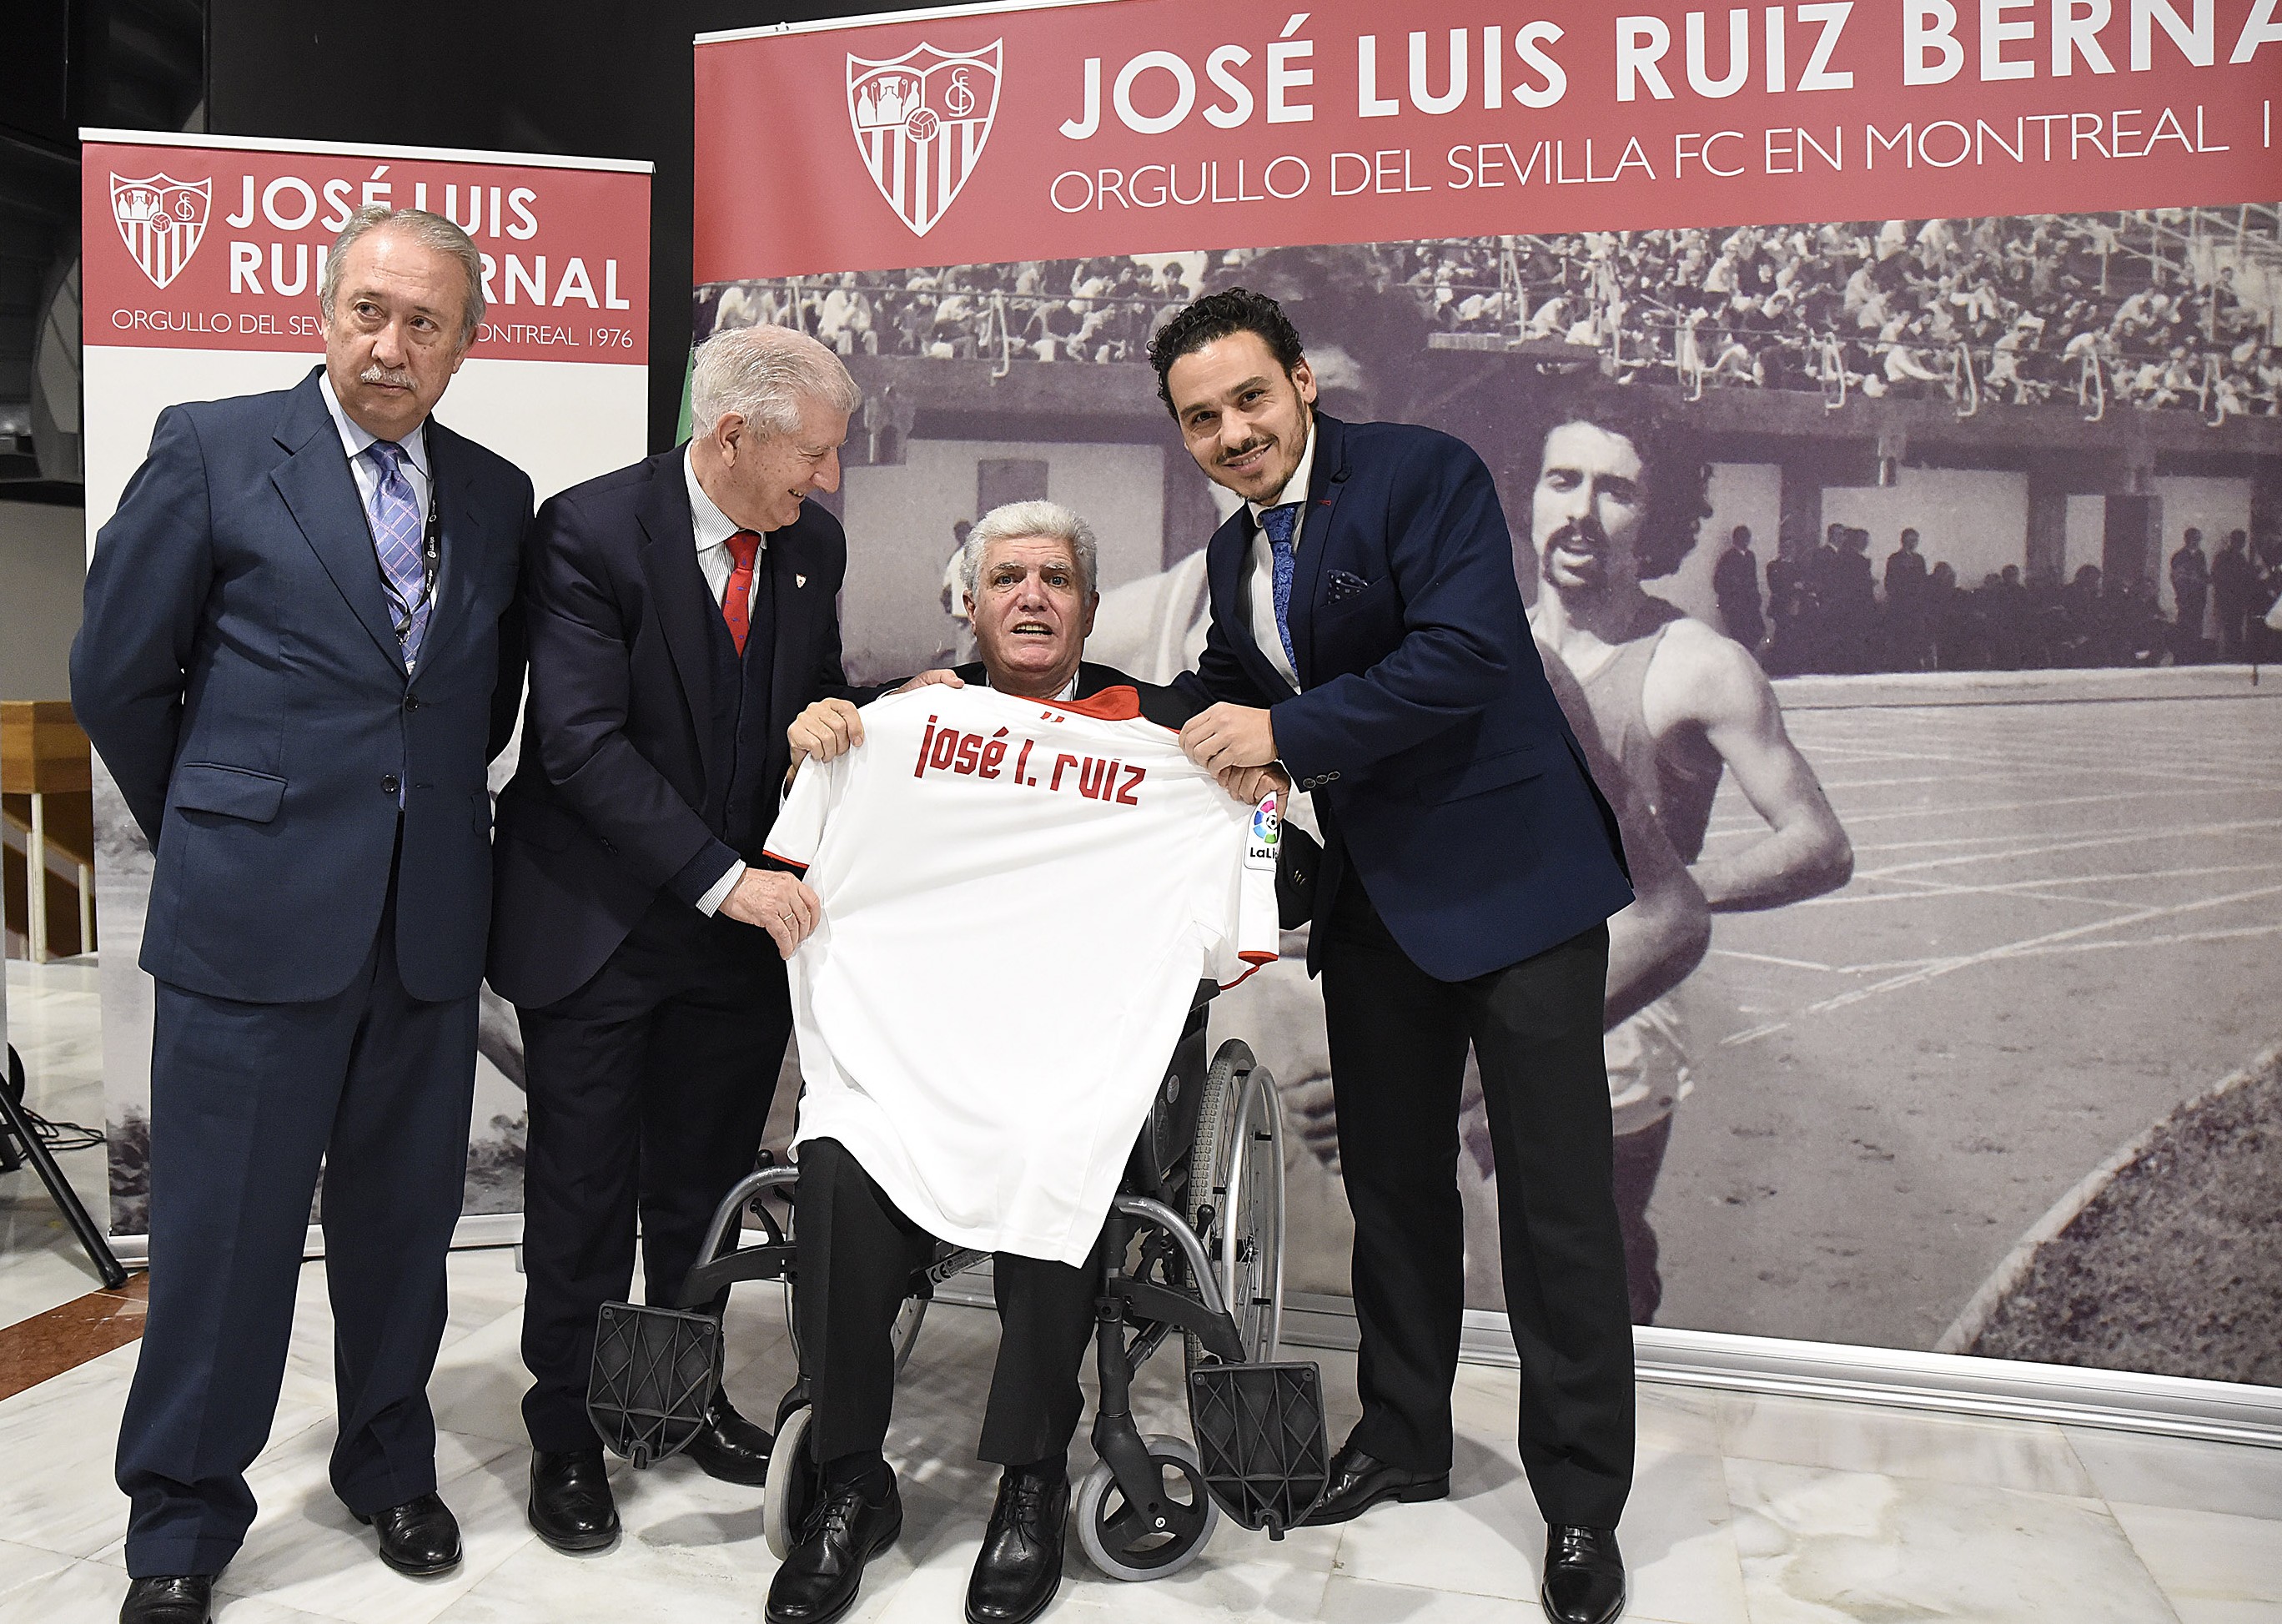 José Luis Ruiz Bernal, homenajeado por el Sevilla FC